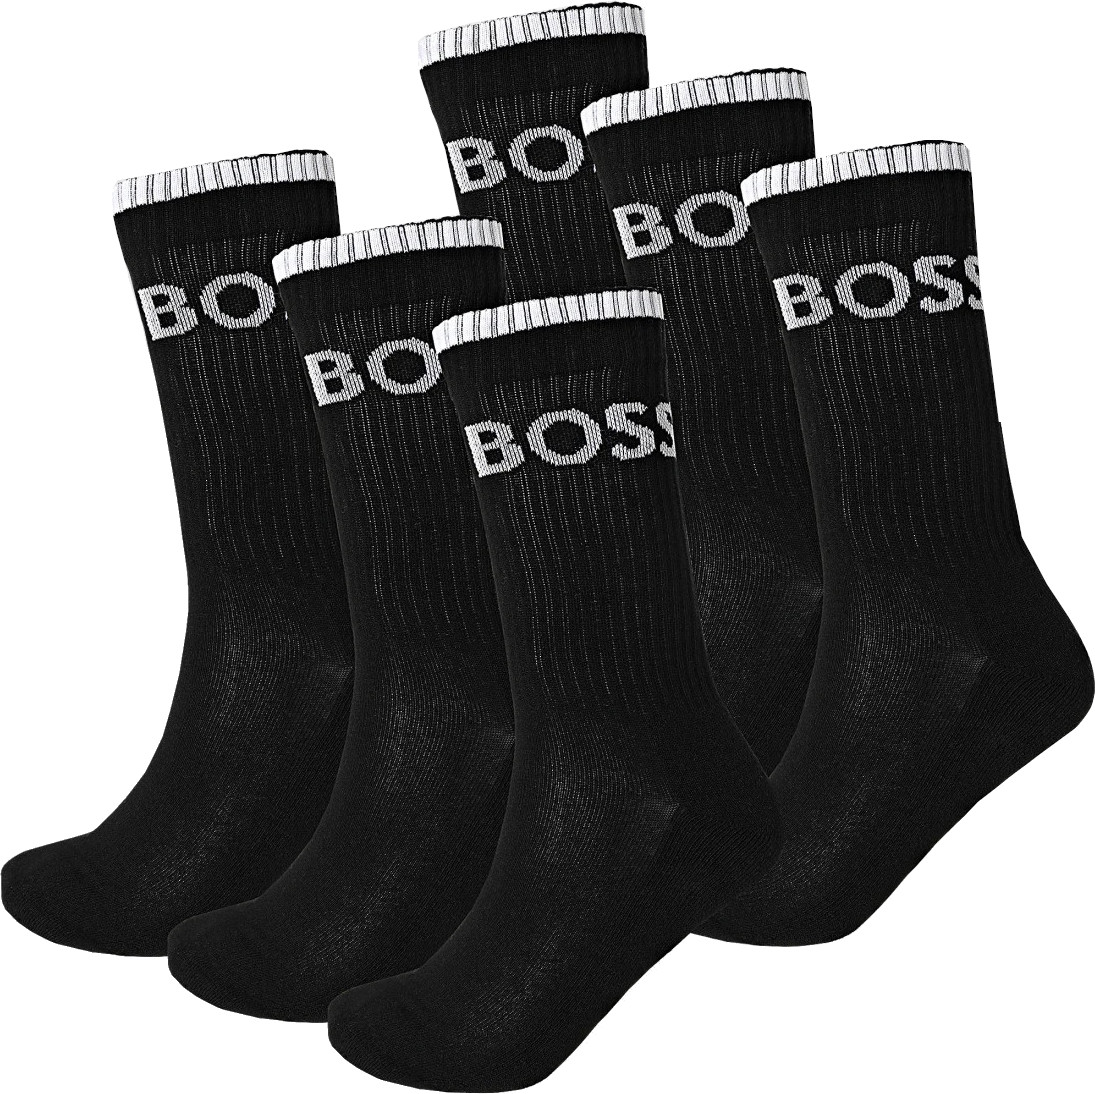 Hugo Boss 6 PACK - pánské ponožky BOSS 50510168-001 43-46